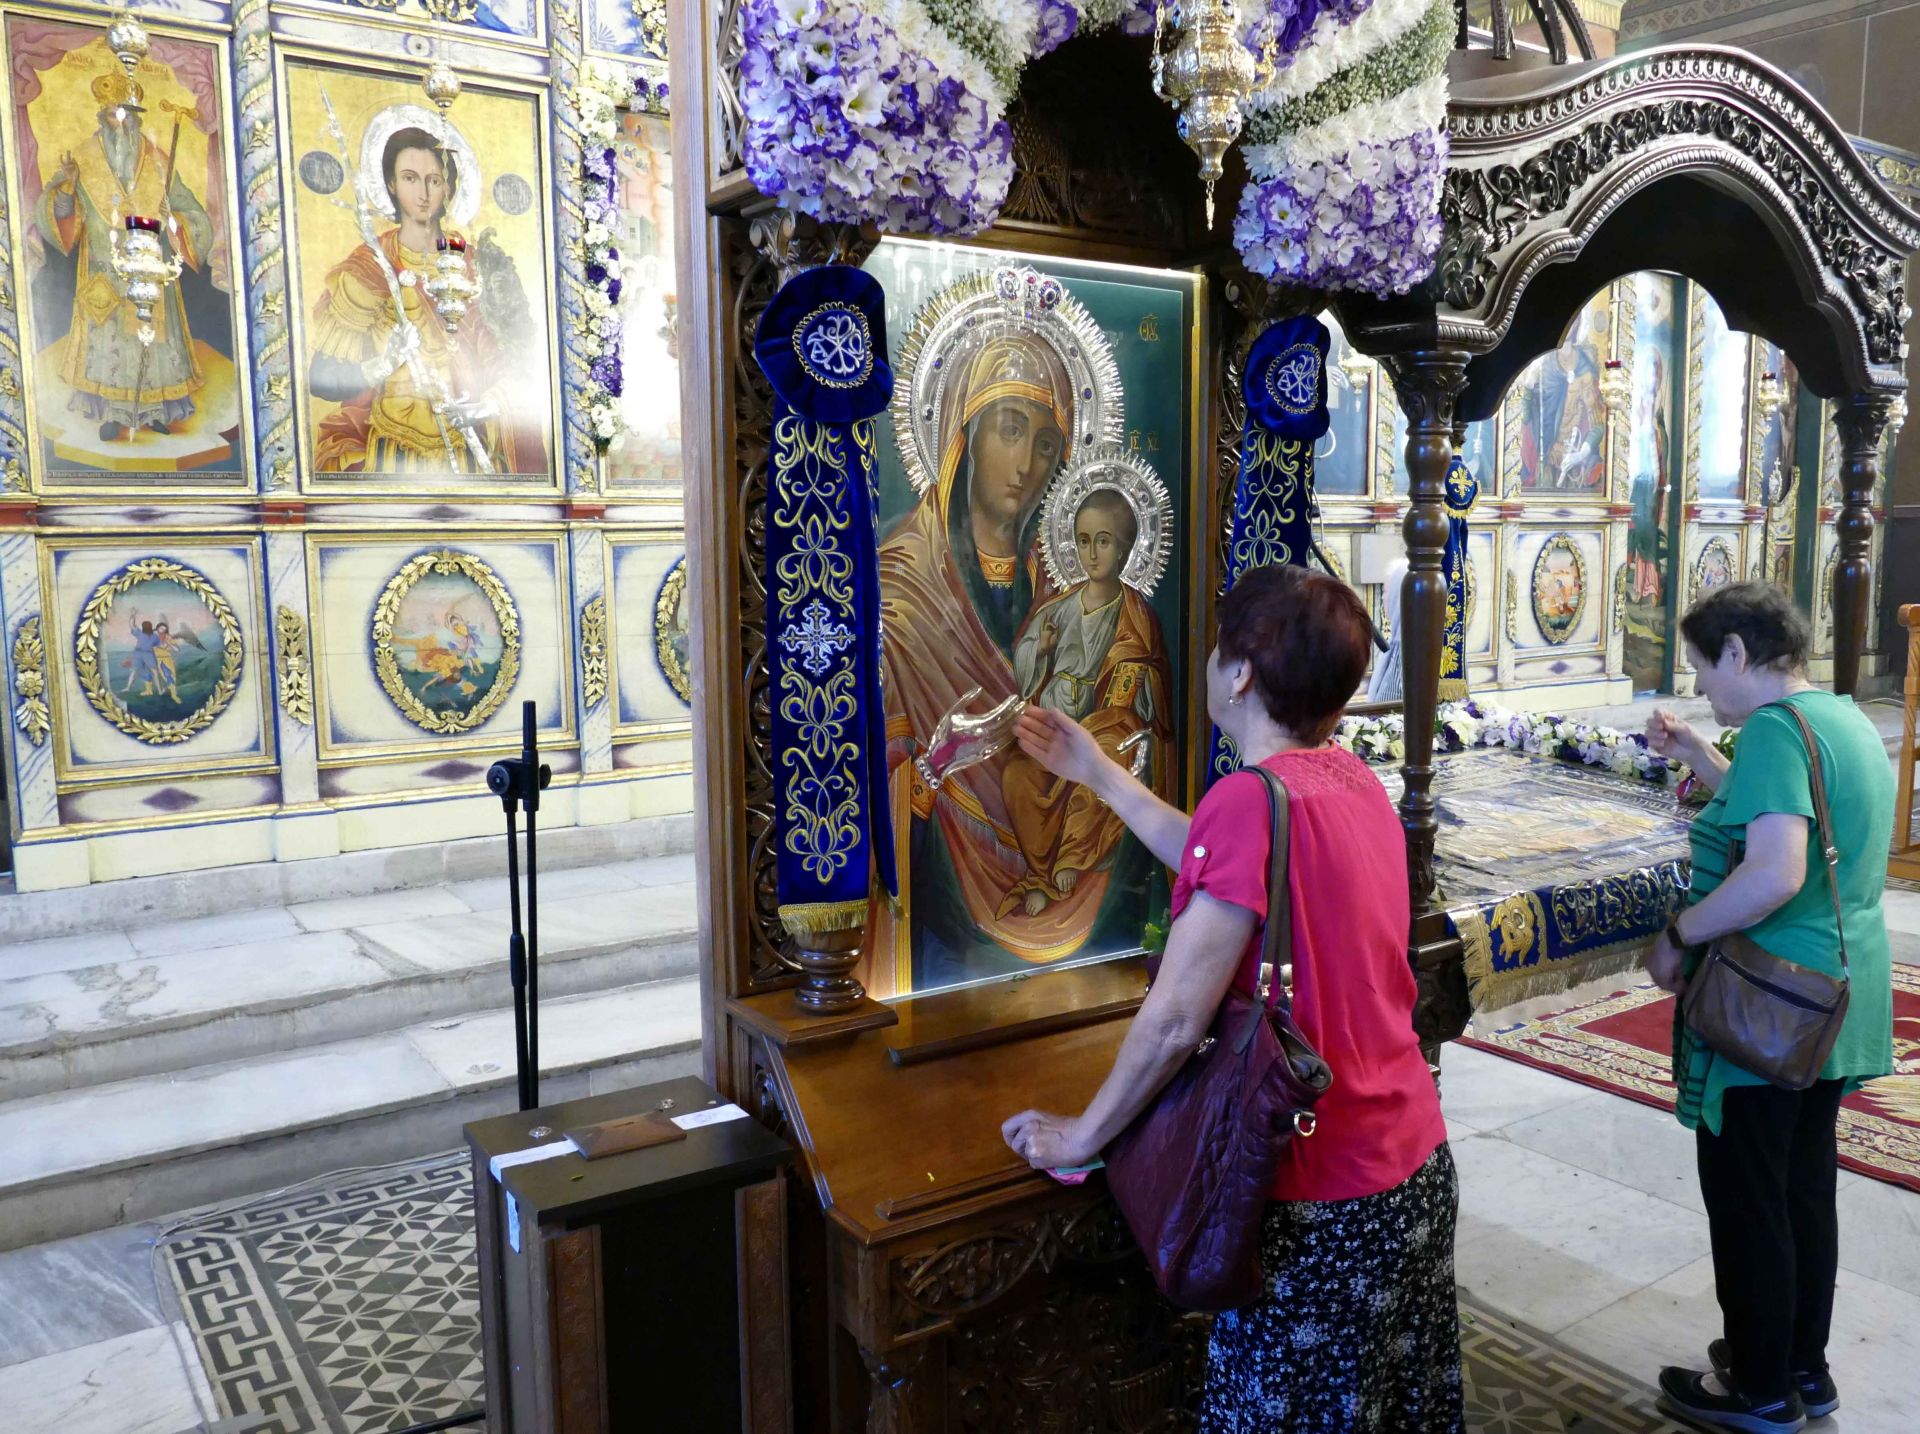 През целия ден гостите на храма отдават почит и се покланят пред плащеницата с образа на Света Богородица.